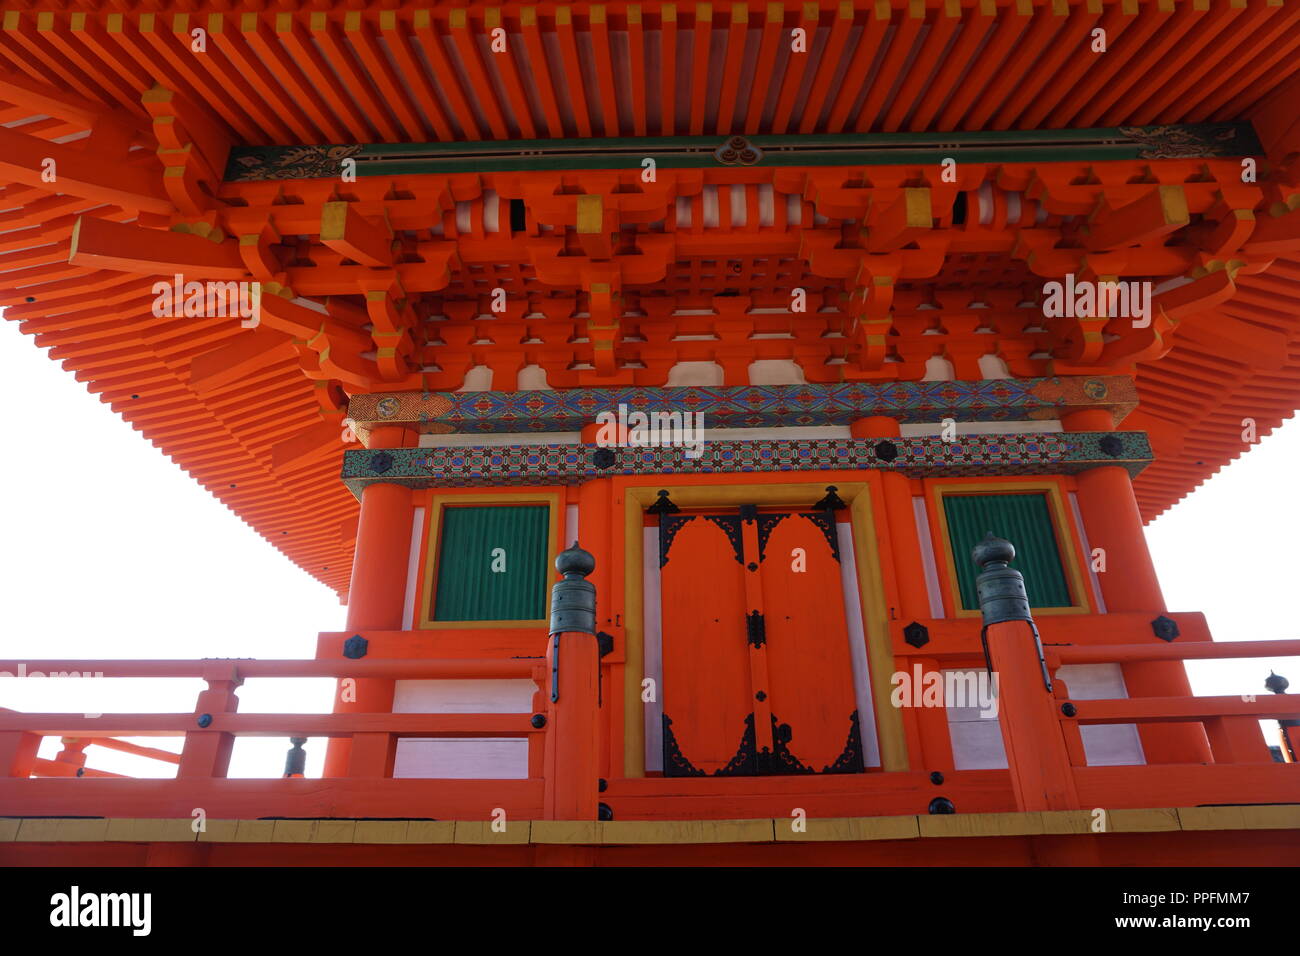 Kyoto, Japón - Agosto 01, 2018: la primera historia de tres pagoda del templo budista de Kiyomizu-dera, Patrimonio de la Humanidad por la UNESCO. Foto de stock